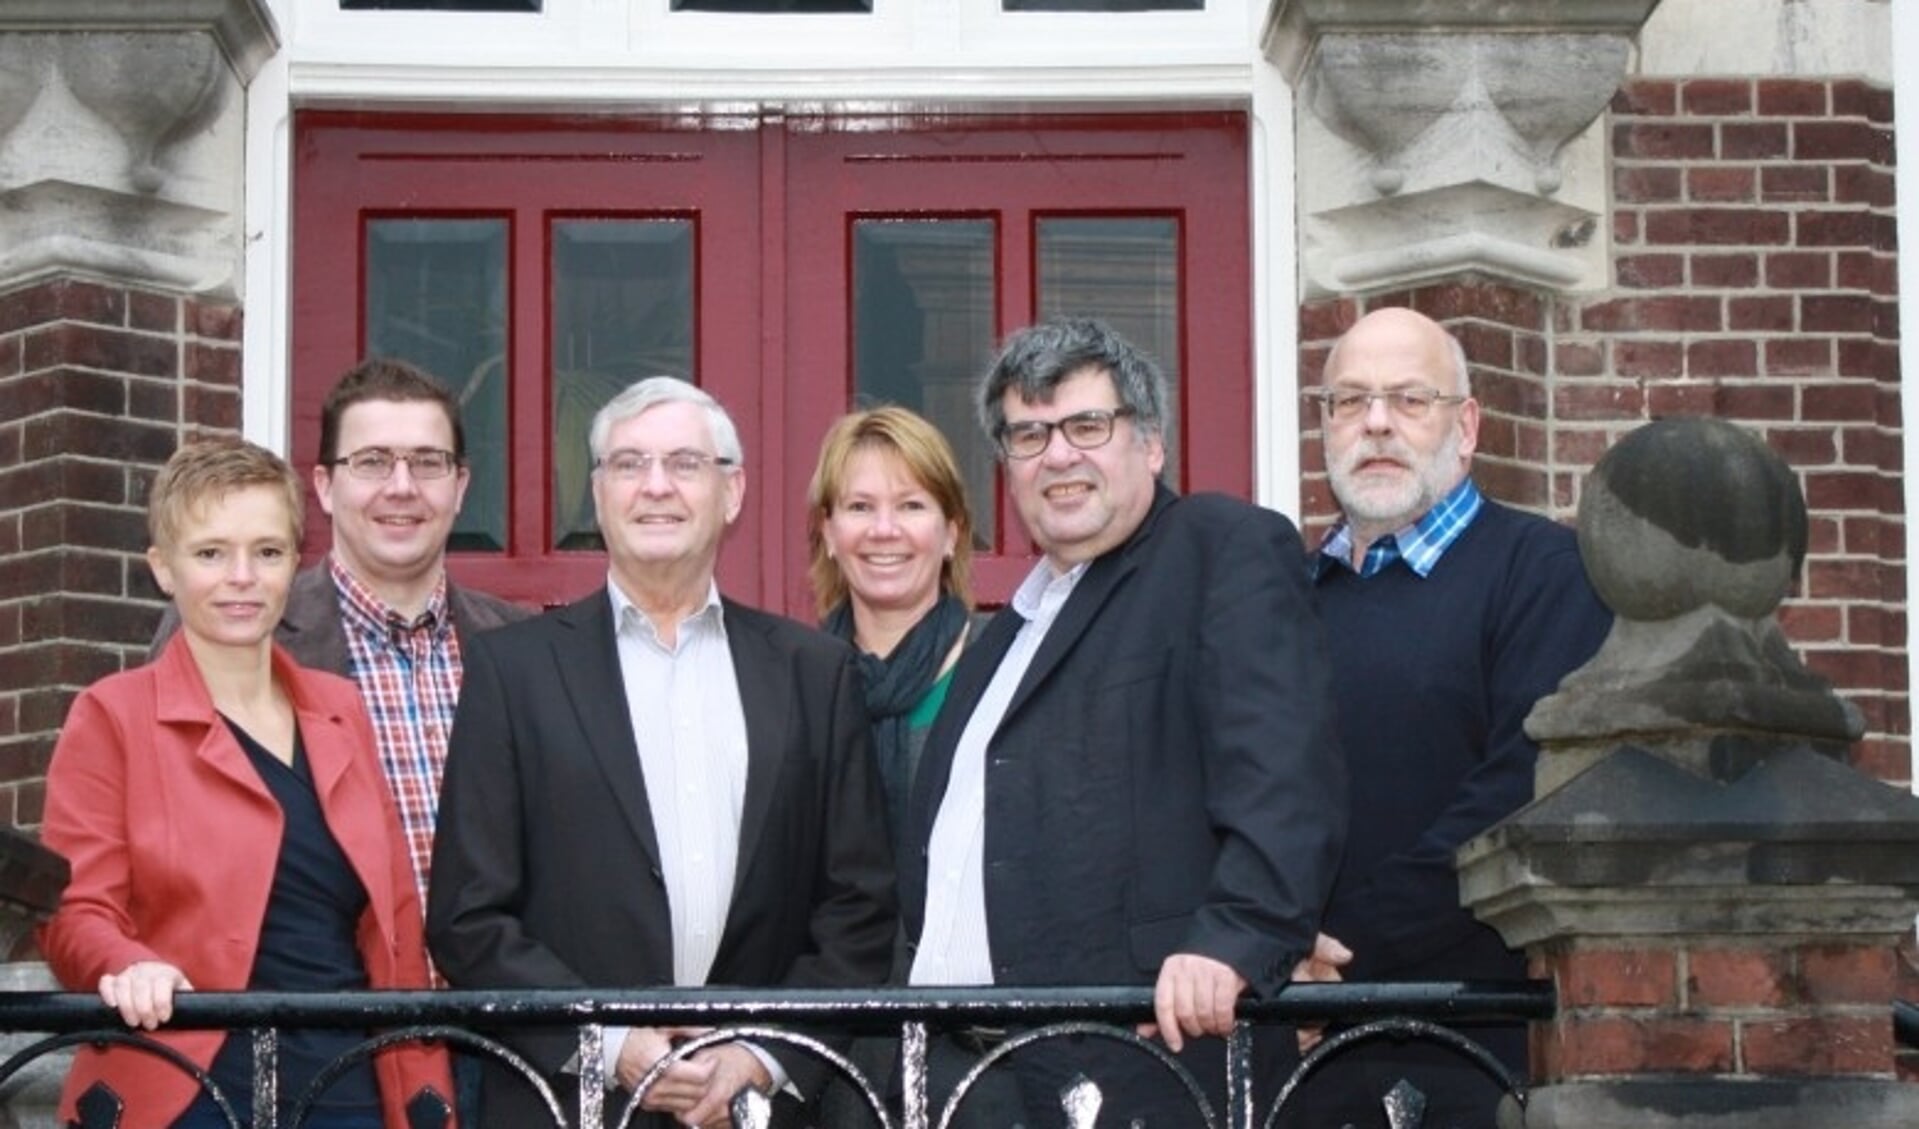 De fractie KERN met de kandidaten voor een raadszetel voor de gemeenteraadsverkiezingen in 2014.